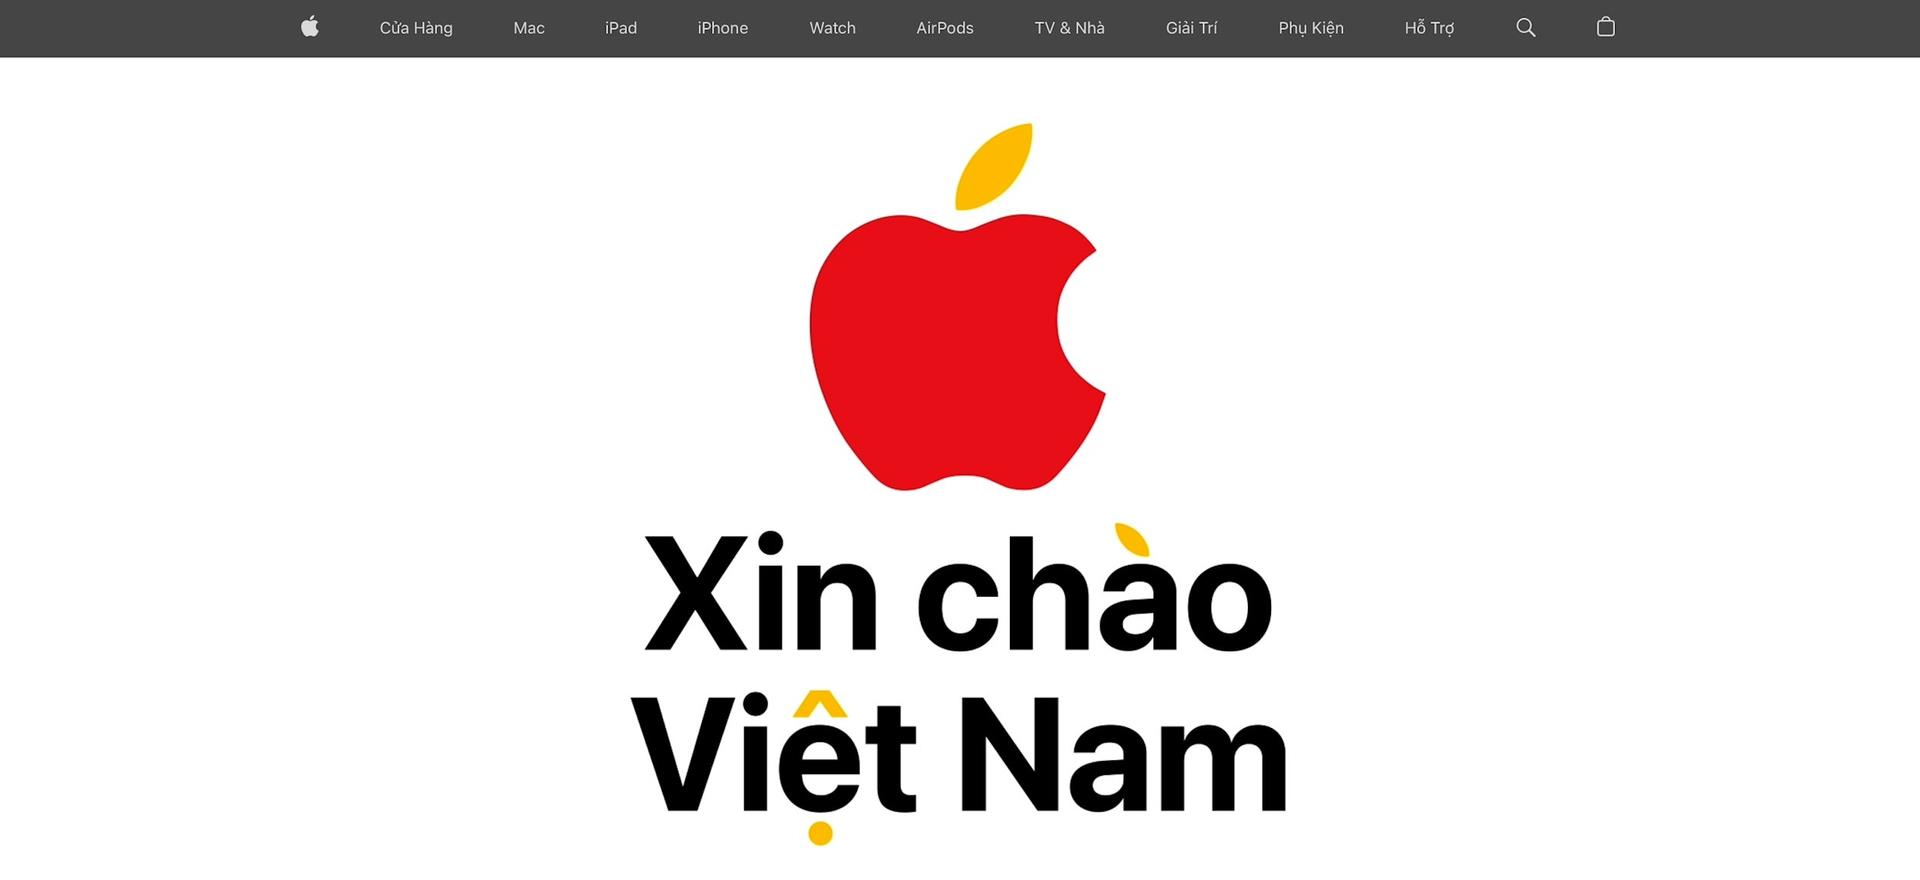 Cửa hàng trực tuyến Apple Việt Nam sau 2 tuần mở cửa: Cứ 10 người lại có 6 người than phiền giá cao, chỉ 2 người chọn mua - Ảnh 1.